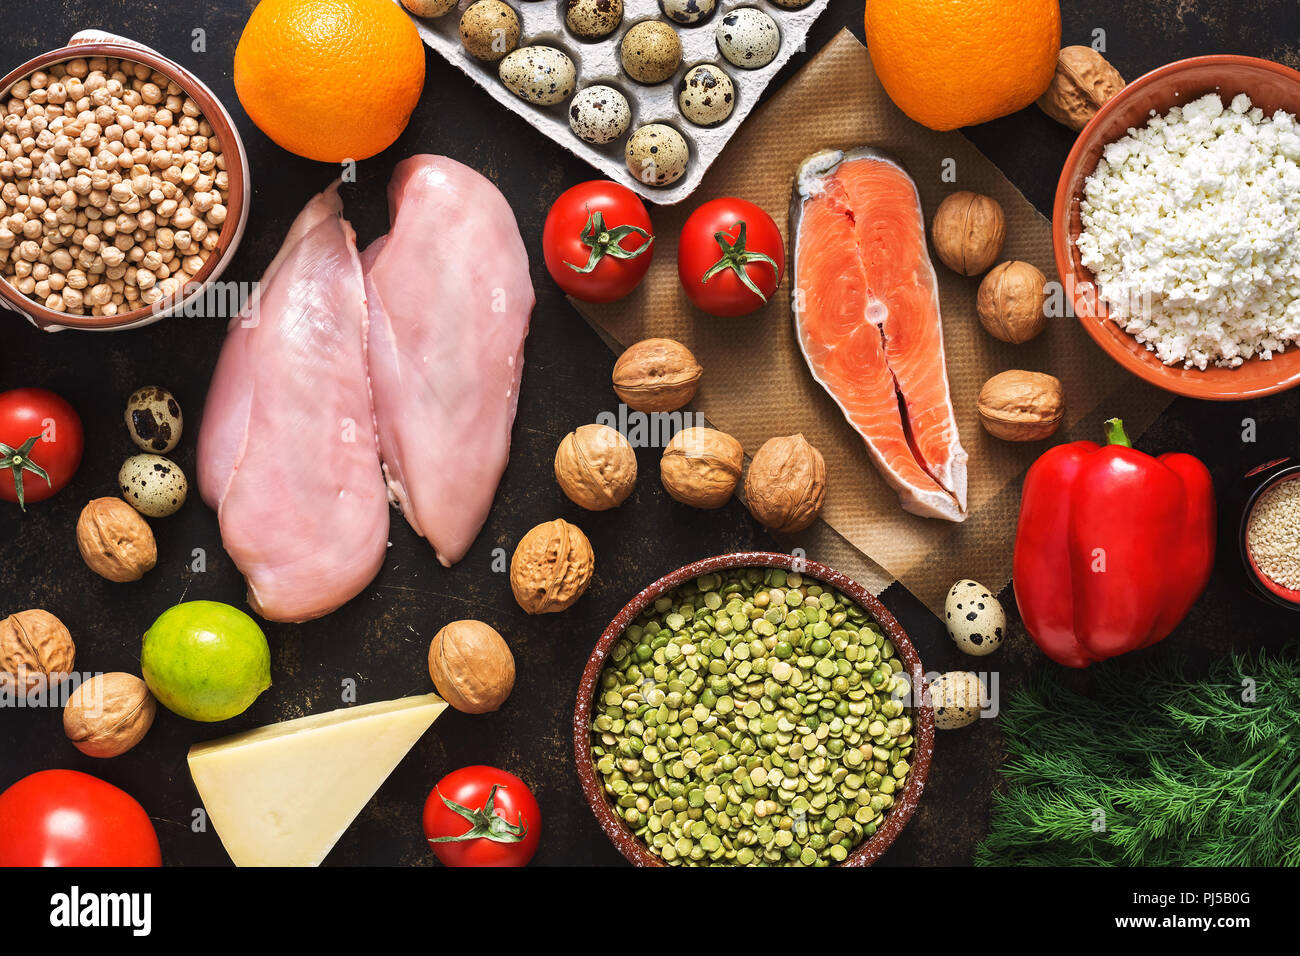 Los productos de la dieta equilibrada. El concepto de alimentación saludable. Antecedentes de una comida saludable. Frutas, verduras, salmón, pechuga de pollo, los cereales. La vista desde arriba, plano laical. Foto de stock